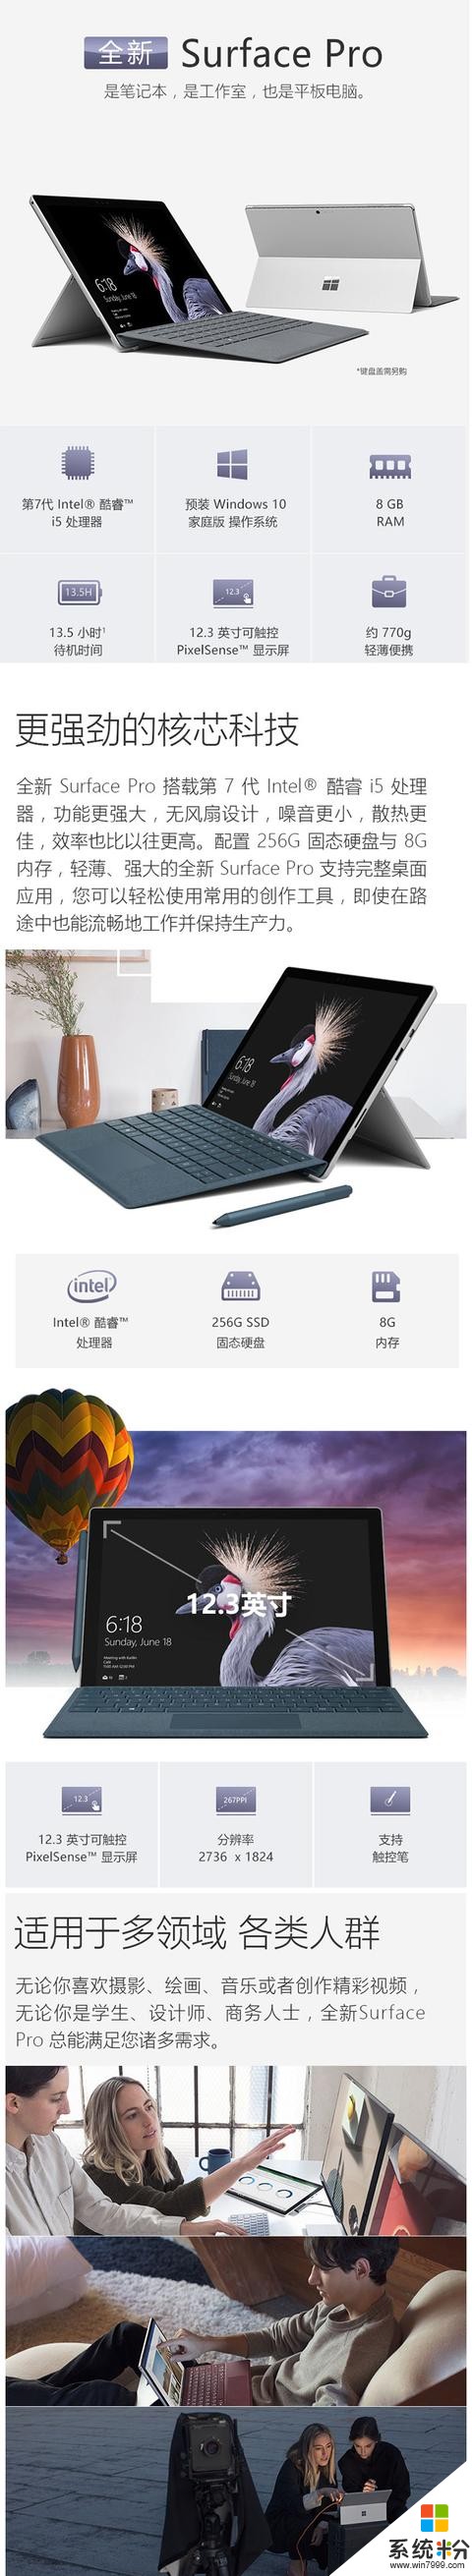 微软New Surface Pro新品i5 256G 8G(2)